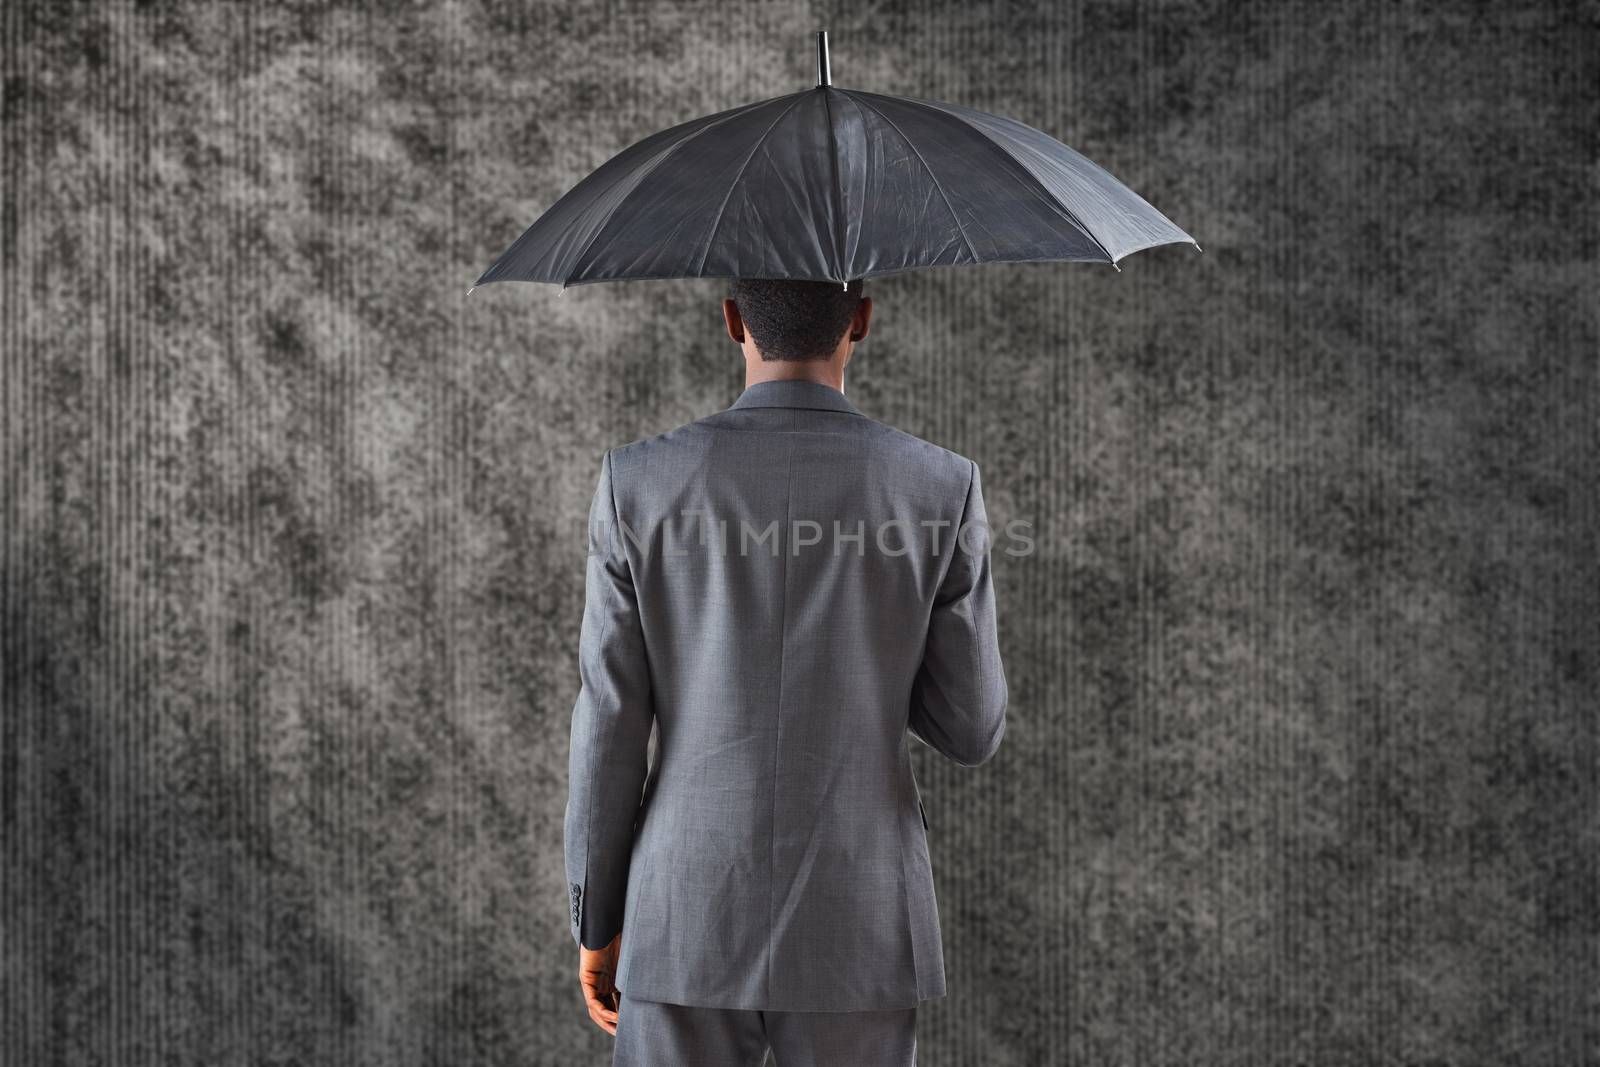 Businessman standing under umbrella against grey background